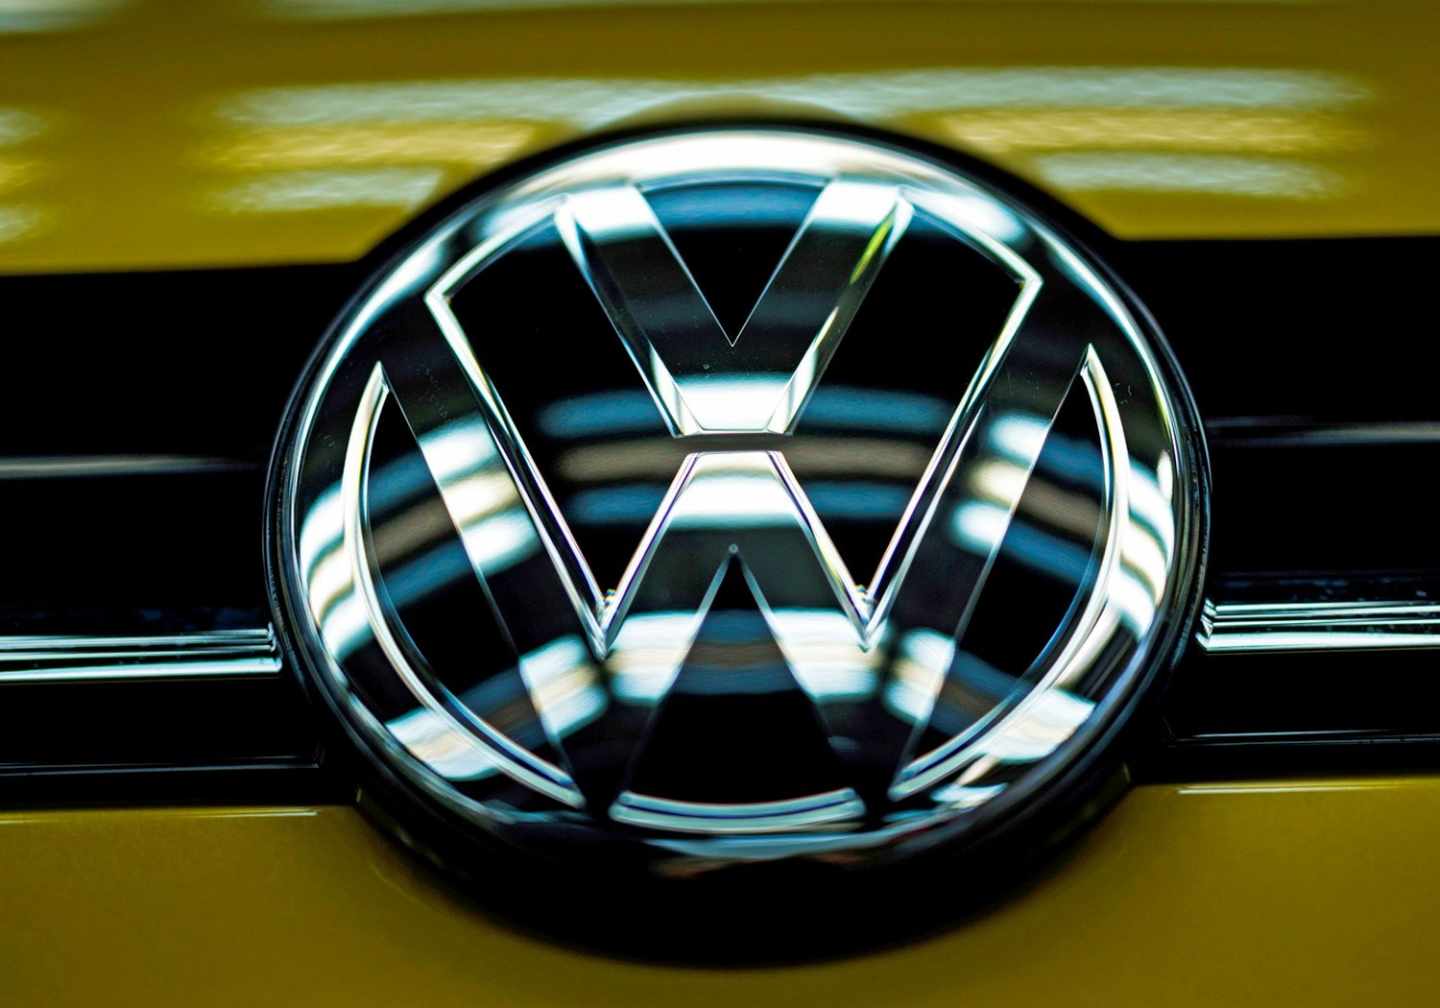 Bruselas investiga si Volkswagen, Daimler y BMW pactaron no competir en la reducción de emisiones.